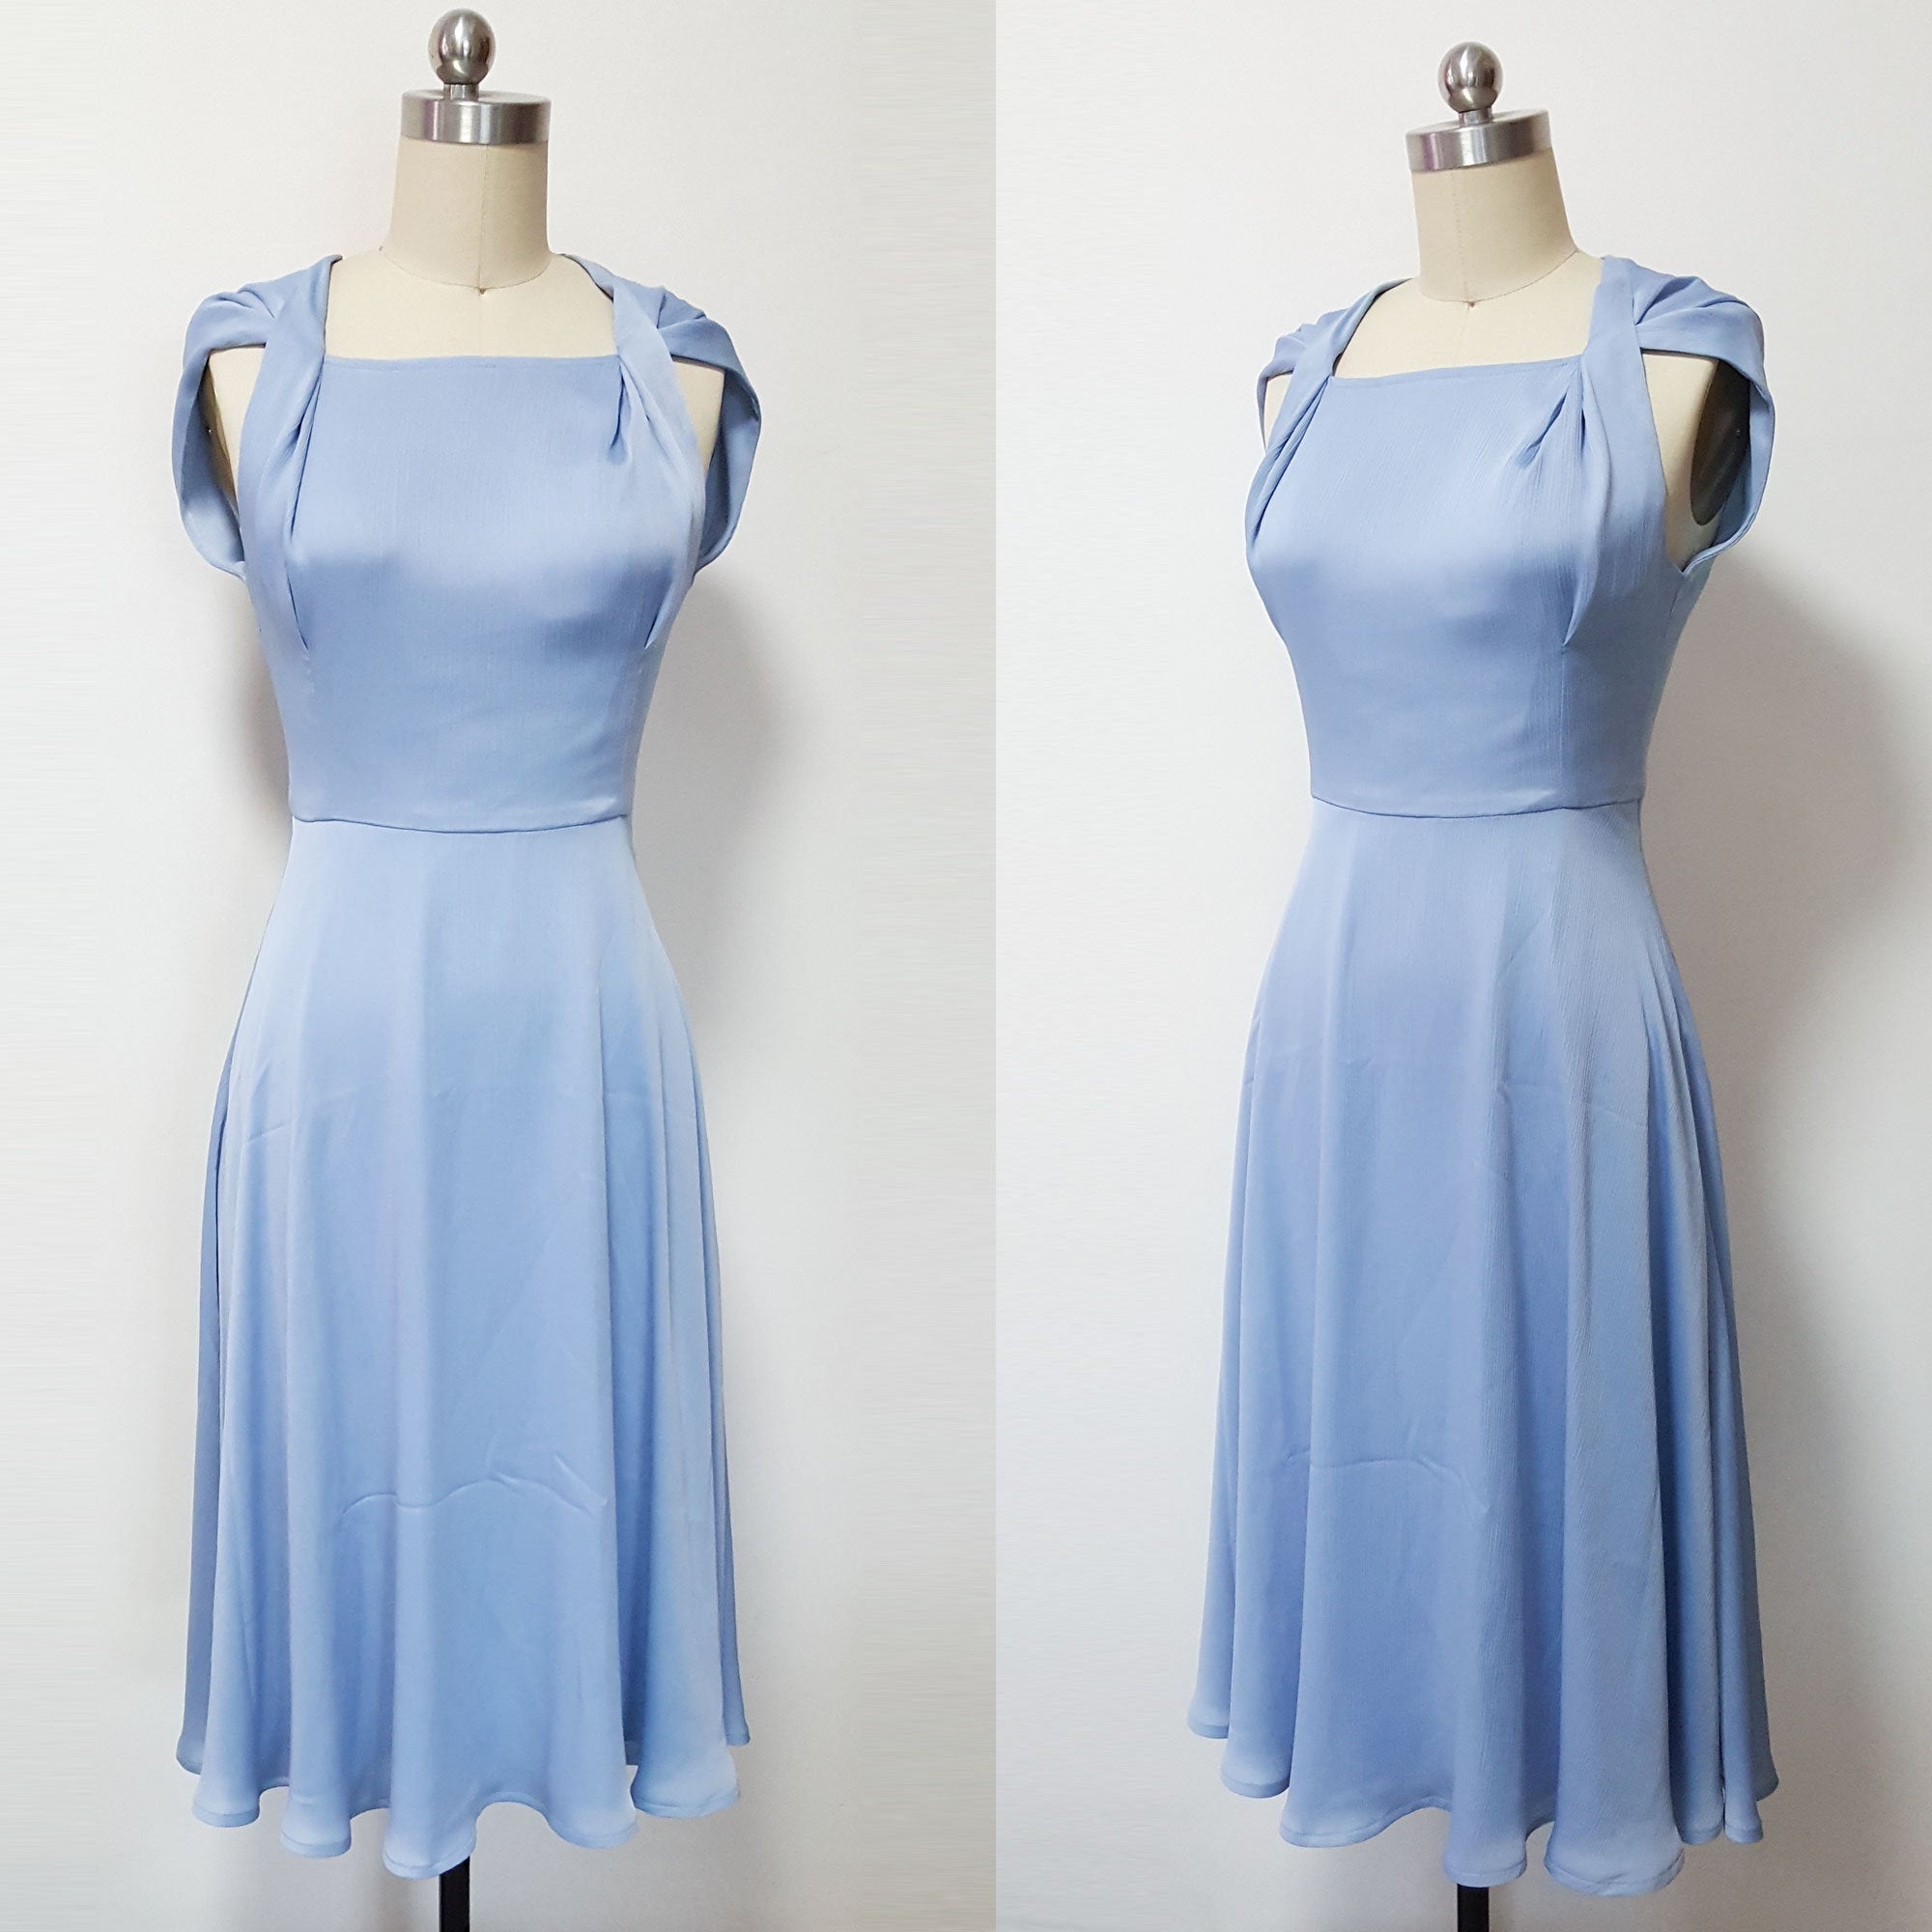 Duchess Cambridge wimbledon dress blue swing dress summer dress jordin dress custom made dress Kate Middleton light blue dress